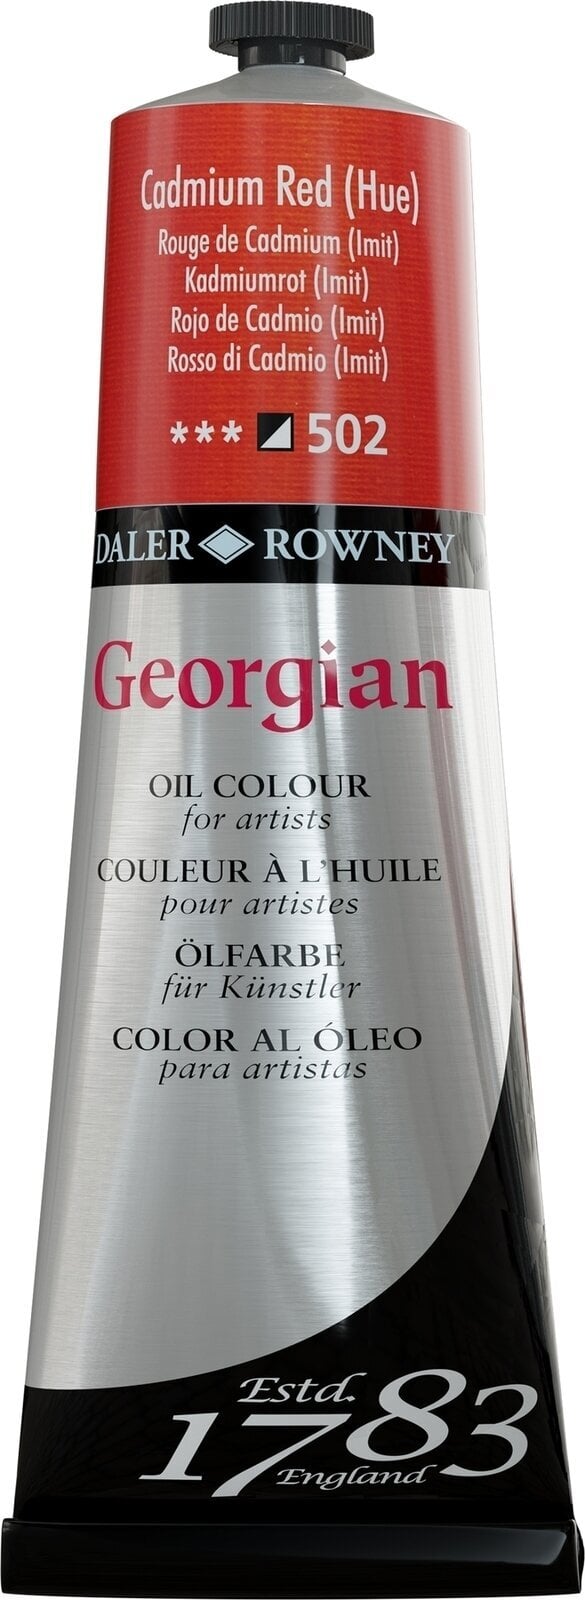 Ölfarbe Daler Rowney Georgian Ölgemälde Cadmium Red Hue 225 ml 1 Stck